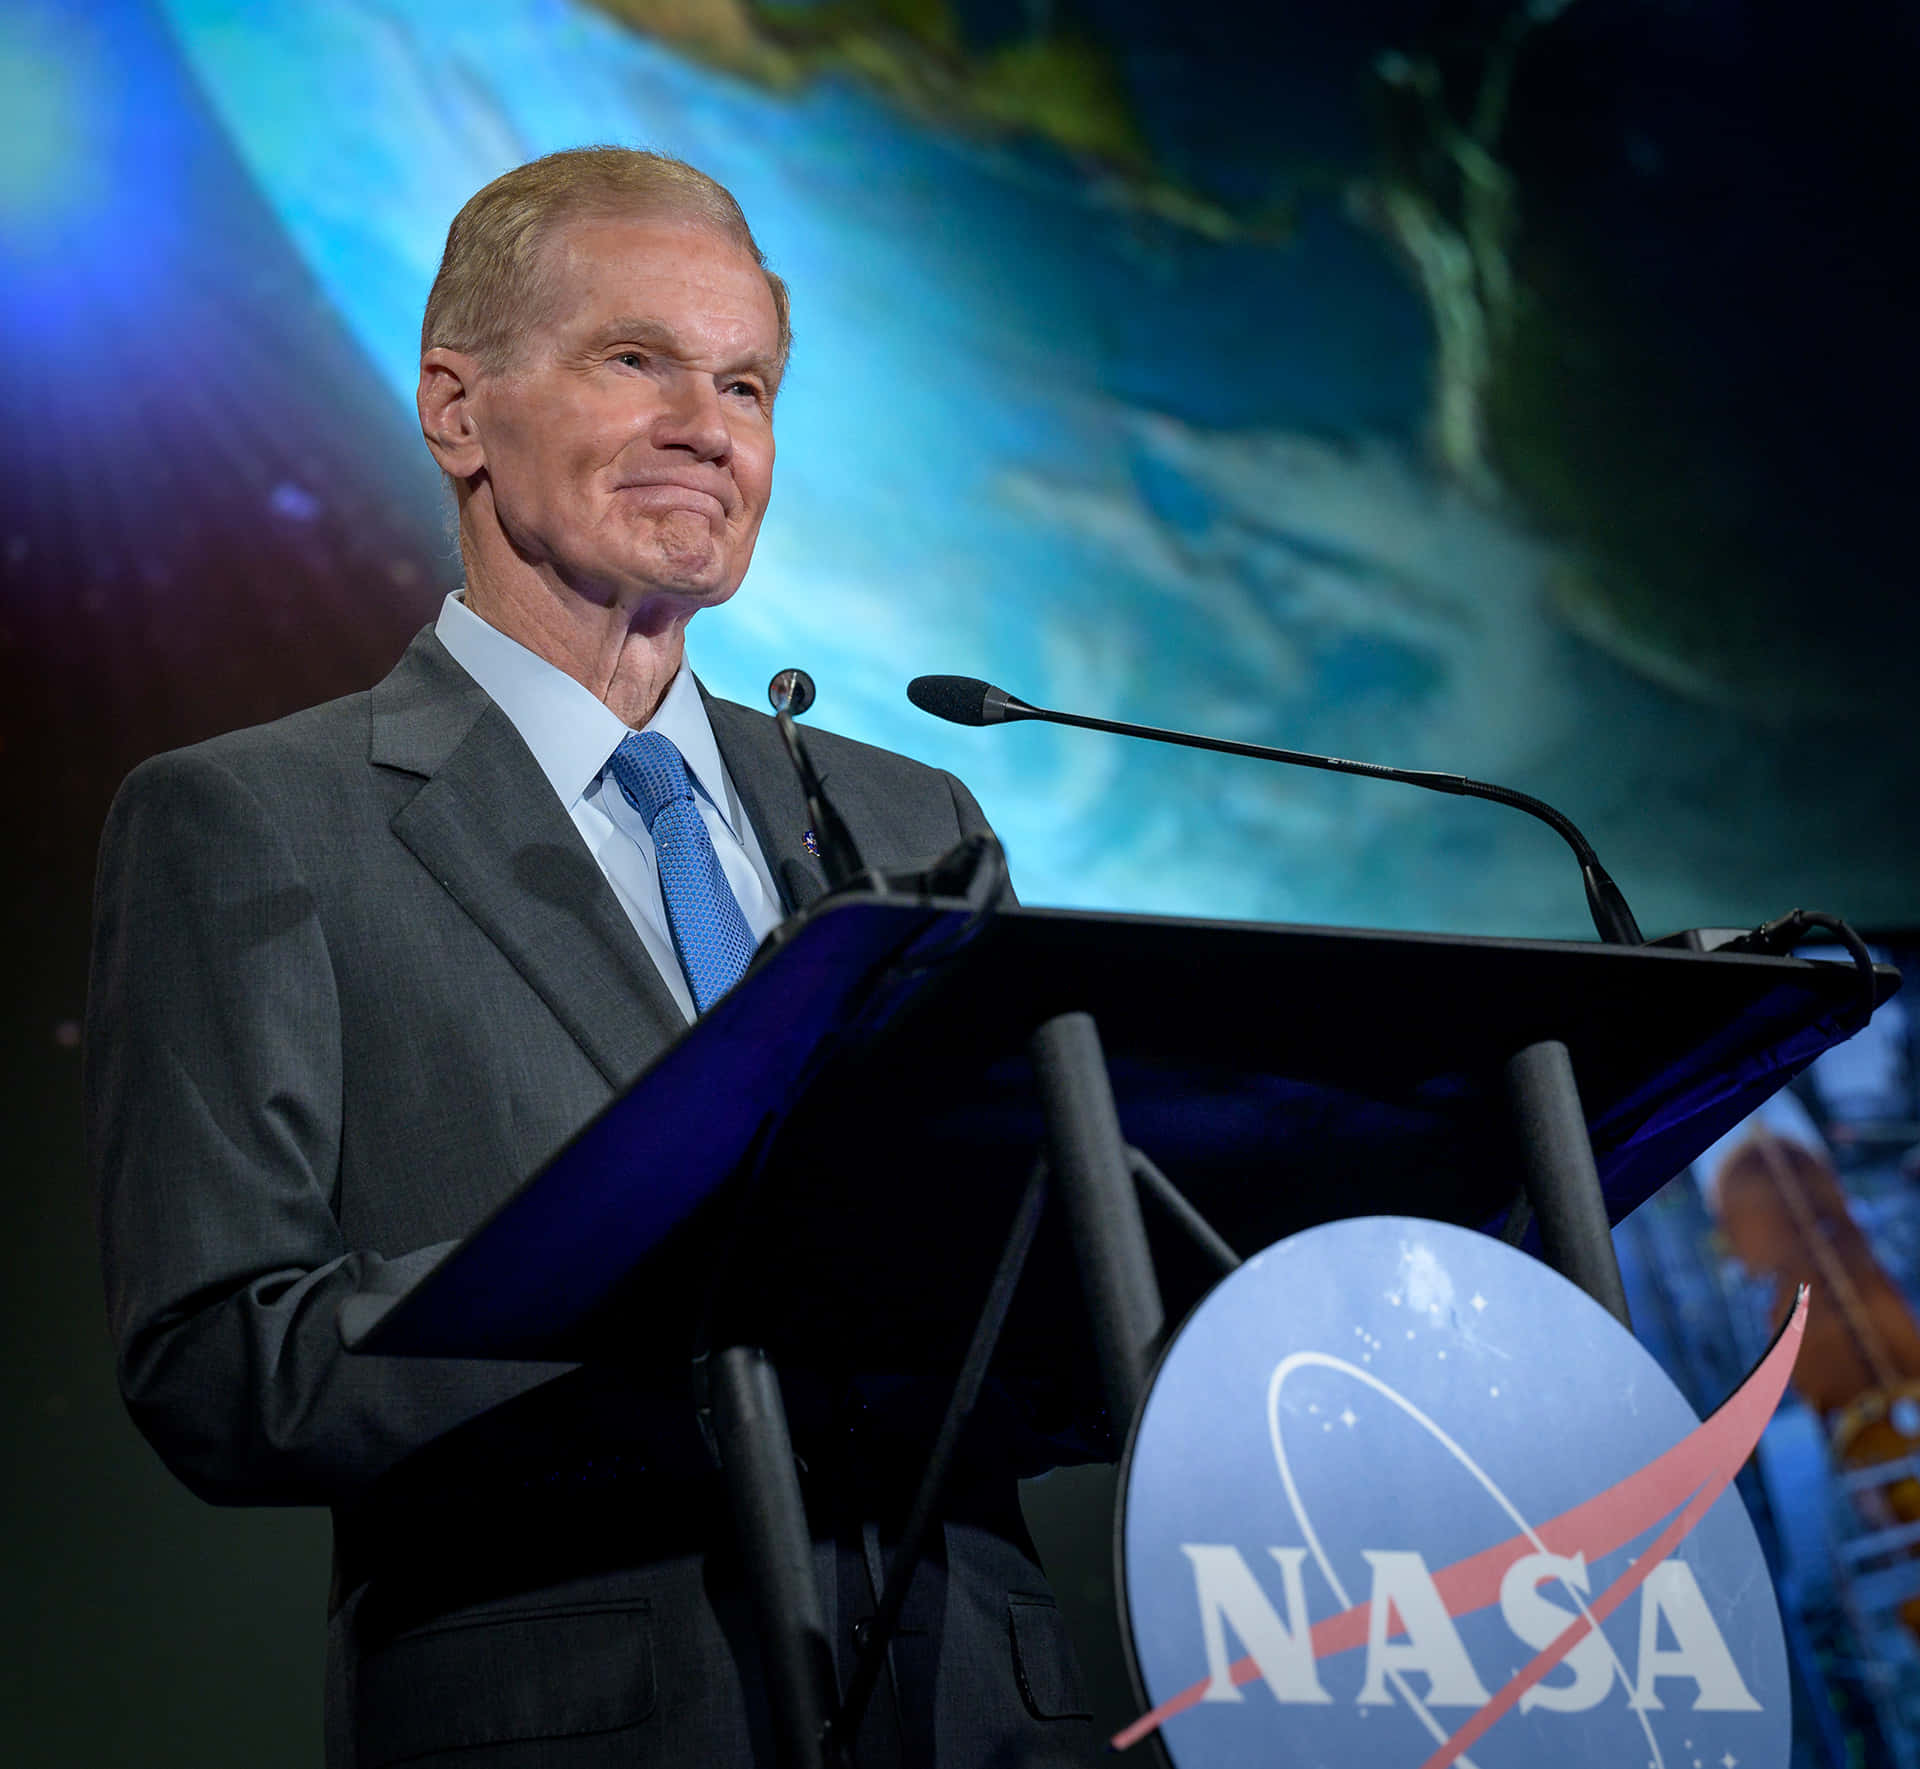 Bill Nelson Speaking For NASA Square Wallpaper